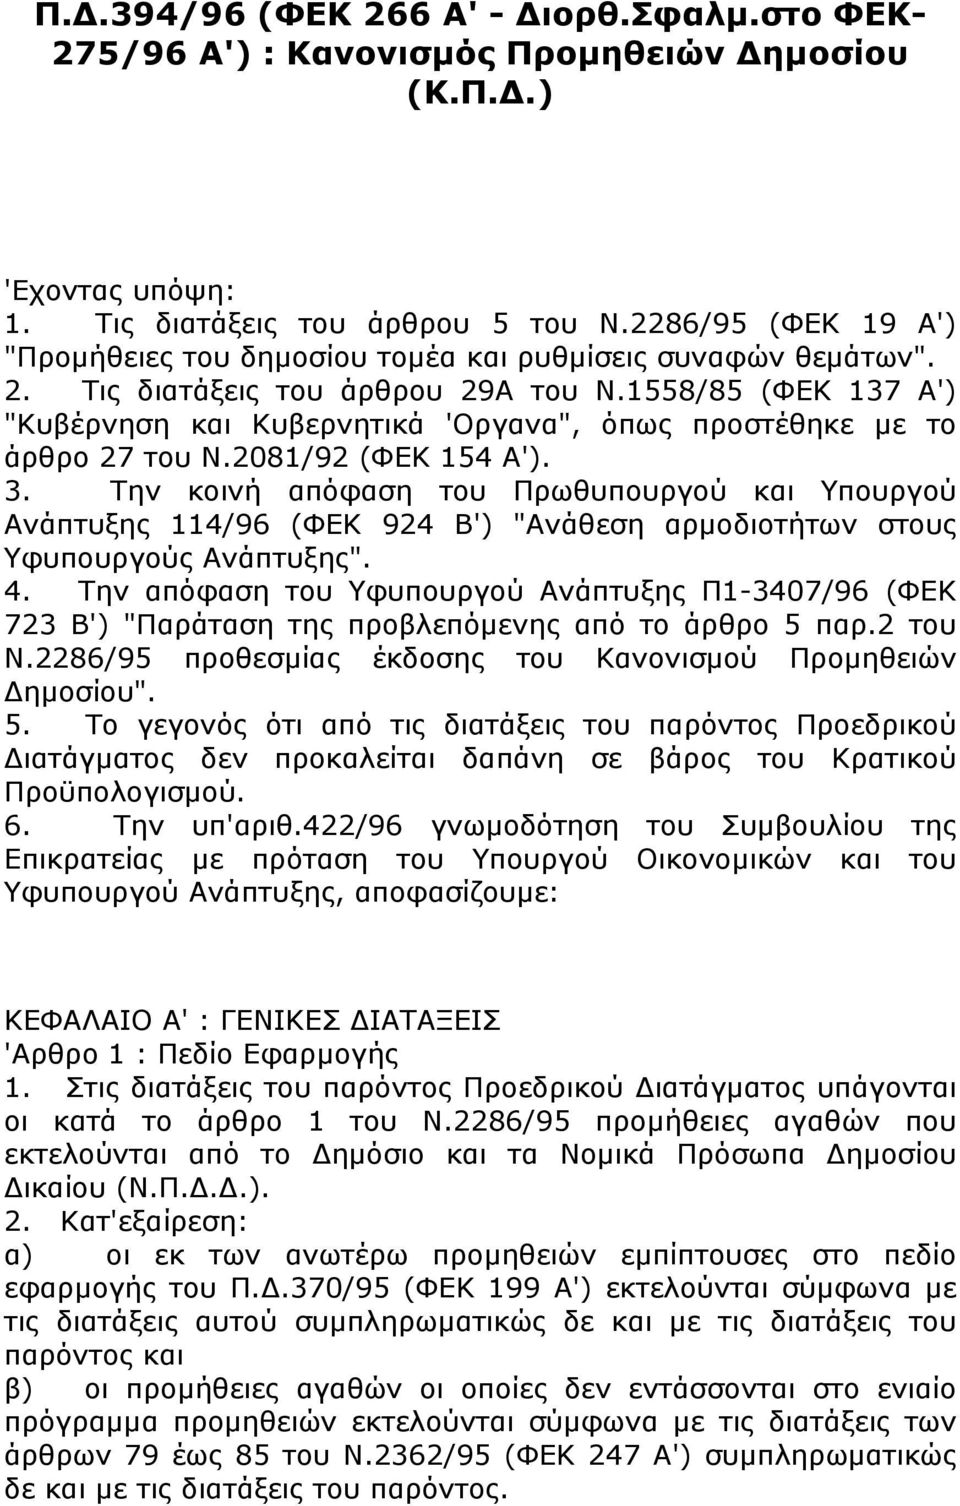 1558/85 (ΦΕΚ 137 Α') "Κυβέρνηση και Κυβερνητικά 'Οργανα", όπως προστέθηκε με το άρθρο 27 του Ν.2081/92 (ΦΕΚ 154 Α'). 3.